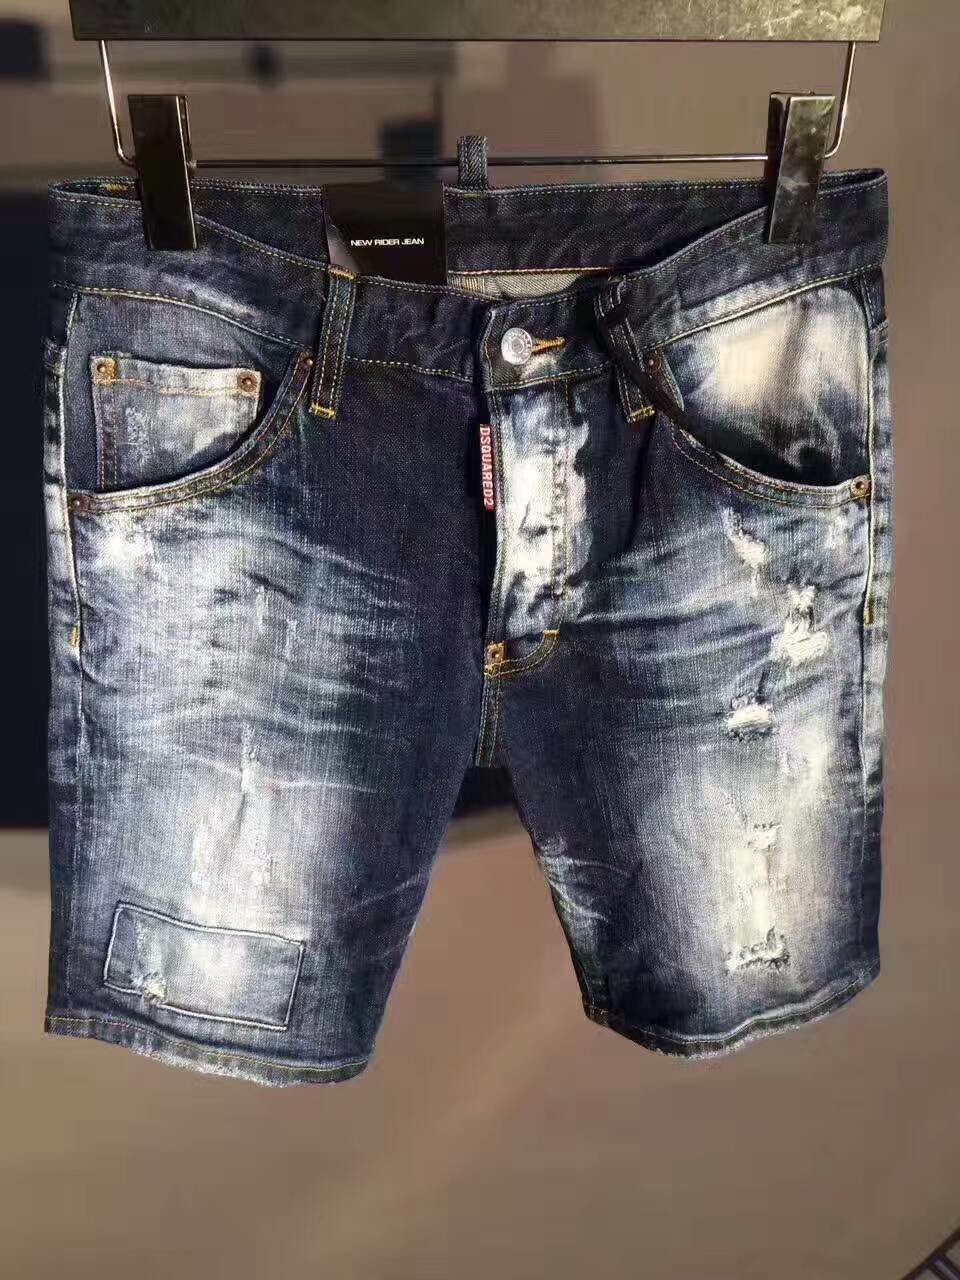 dsquared2 short jeans 2017